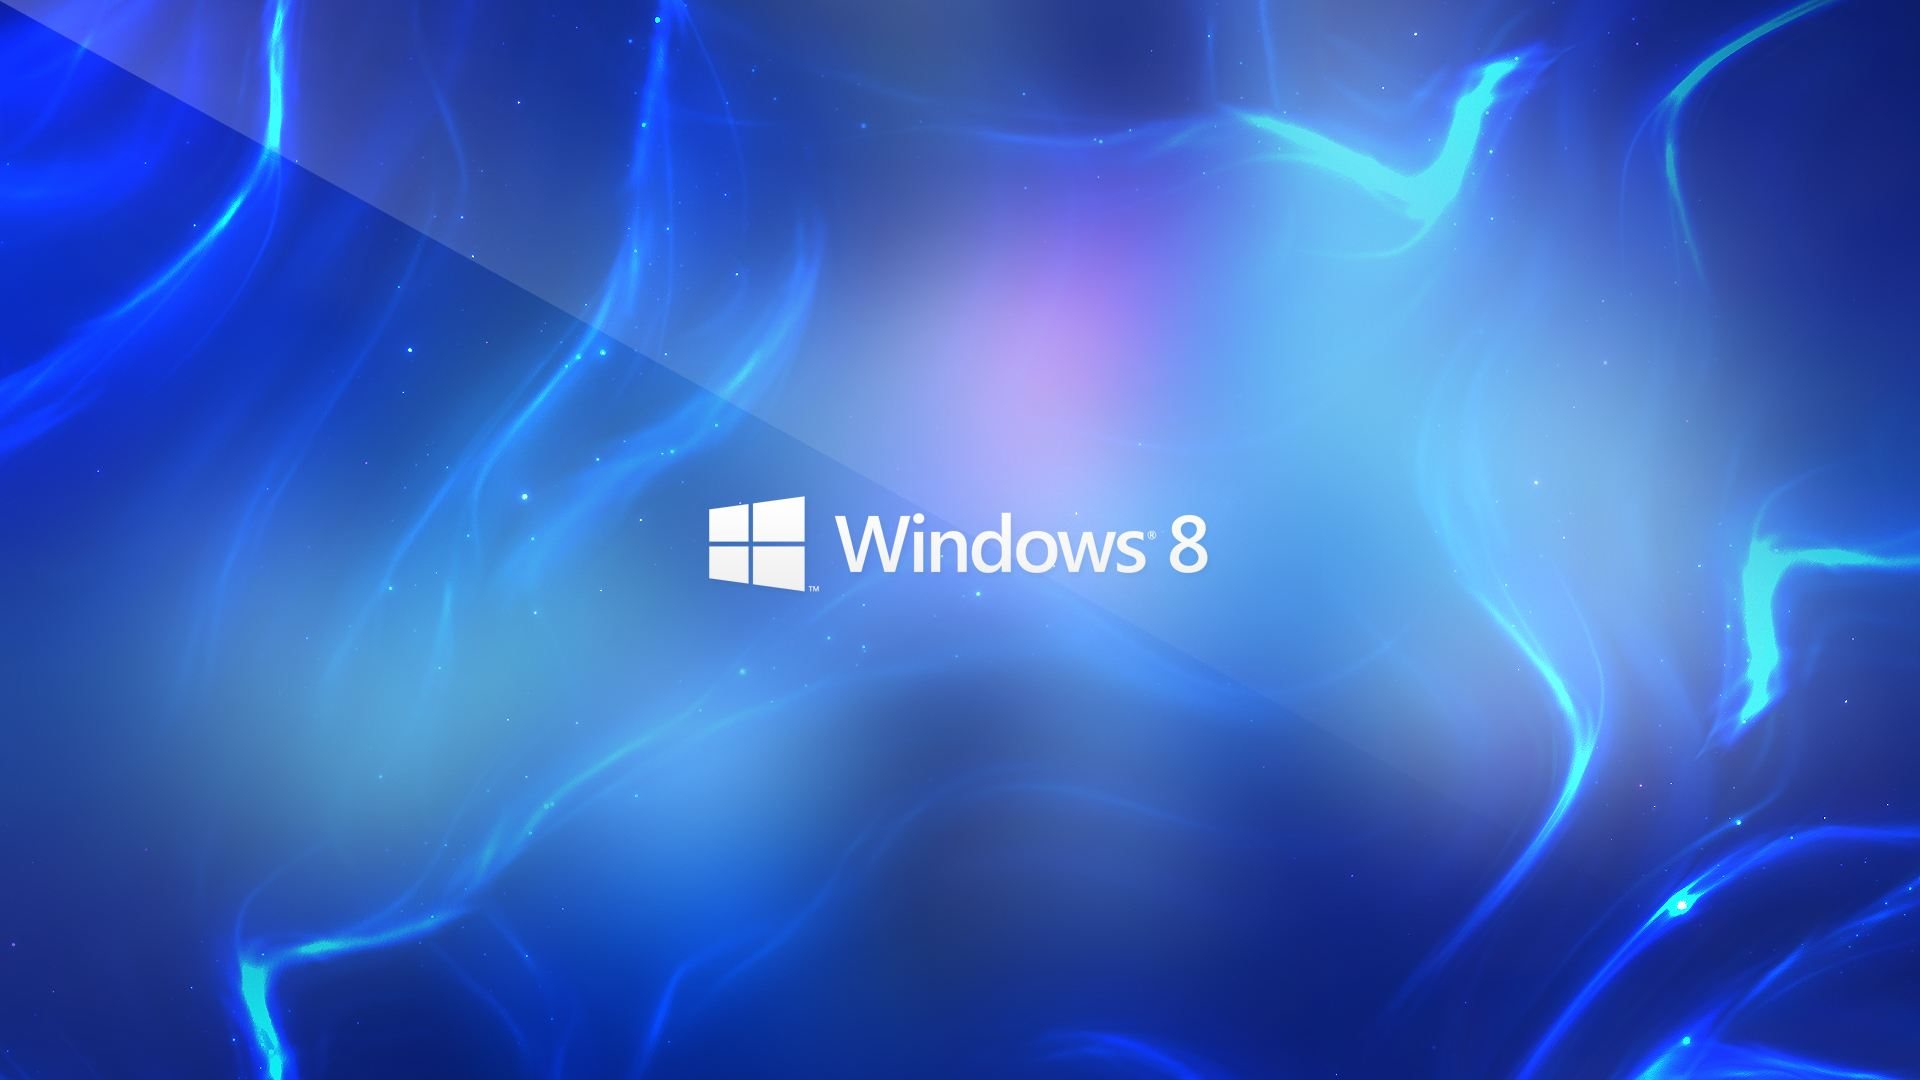 Hãy tận hưởng trải nghiệm tuyệt vời với bộ sưu tập hình nền Windows 8 đầy màu sắc và đa dạng. Những hình ảnh đẹp mắt này sẽ mang đến cho bạn sự thư giãn và động lực cho công việc hàng ngày. Hãy cùng khám phá và tải về ngay nhé!